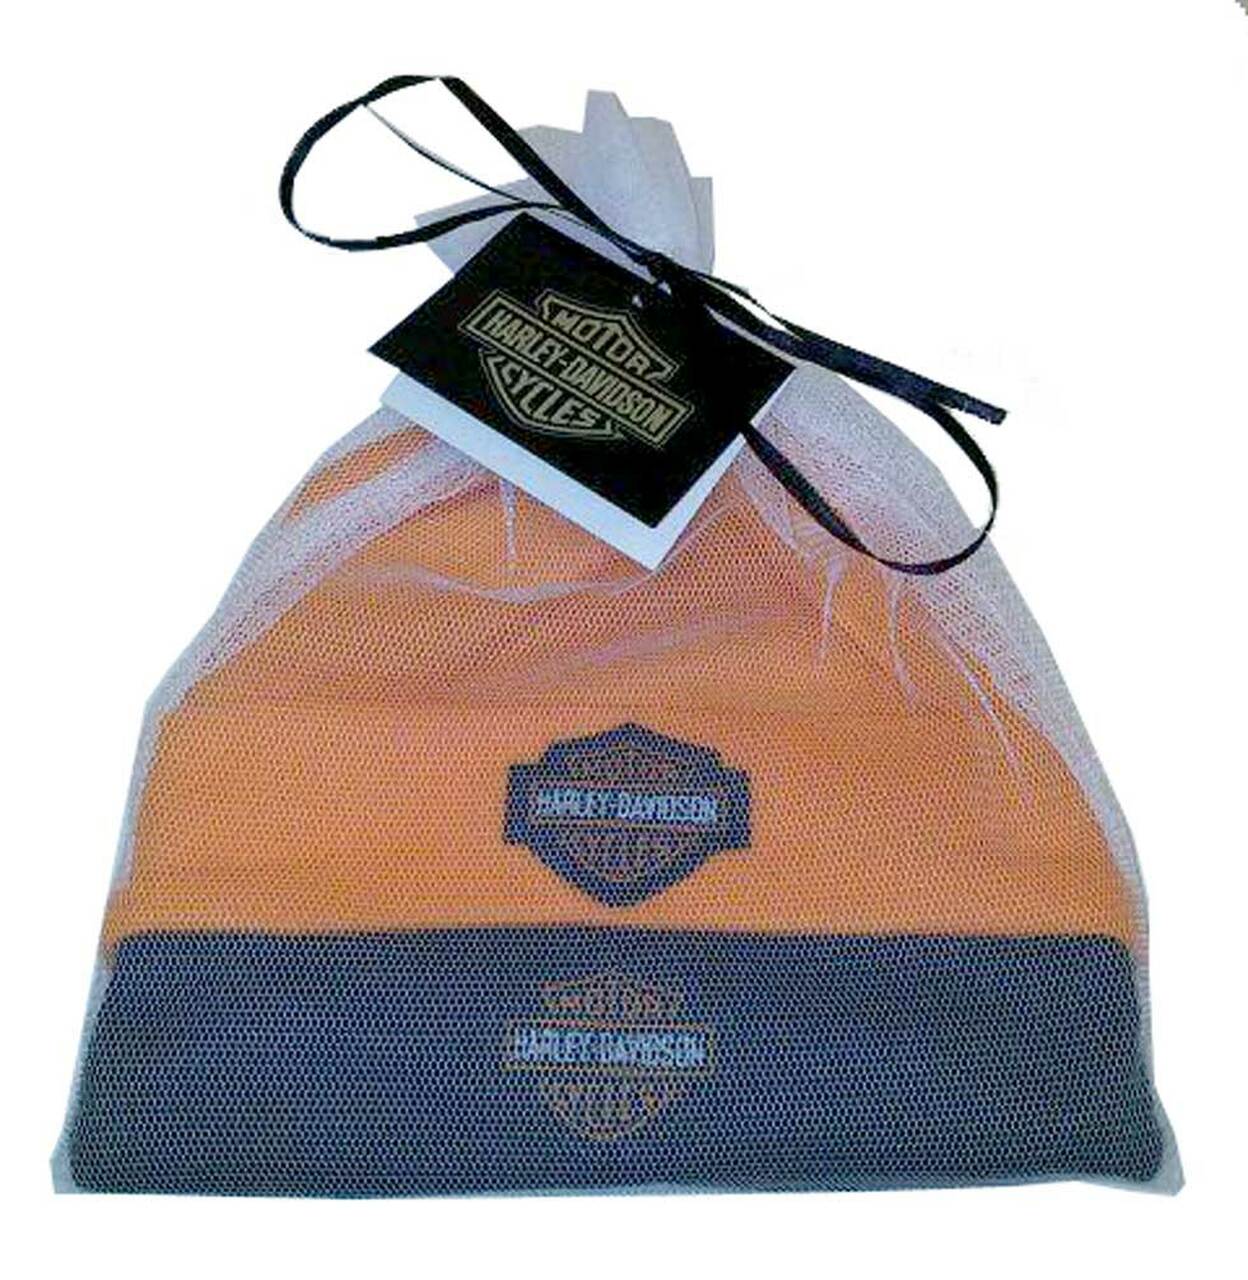 Harley-Davidson® Baby Boy's Infant 2-Pack Gift Set, Black/Orange, 3050044. (NEW)